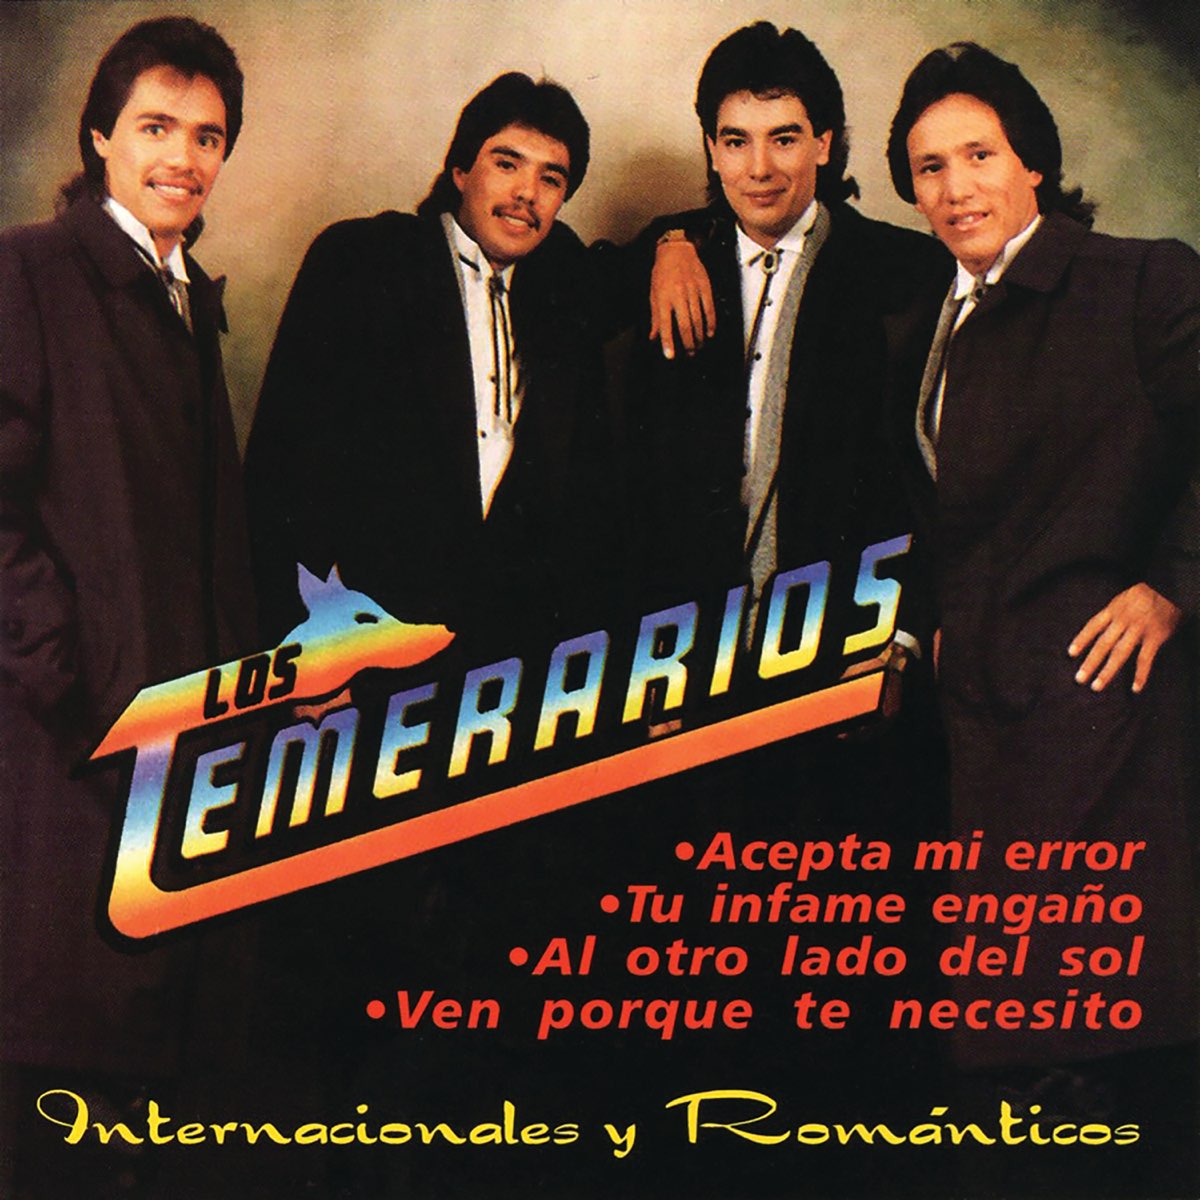 ‎Internacionales y Románticos by Los Temerarios on Apple Music